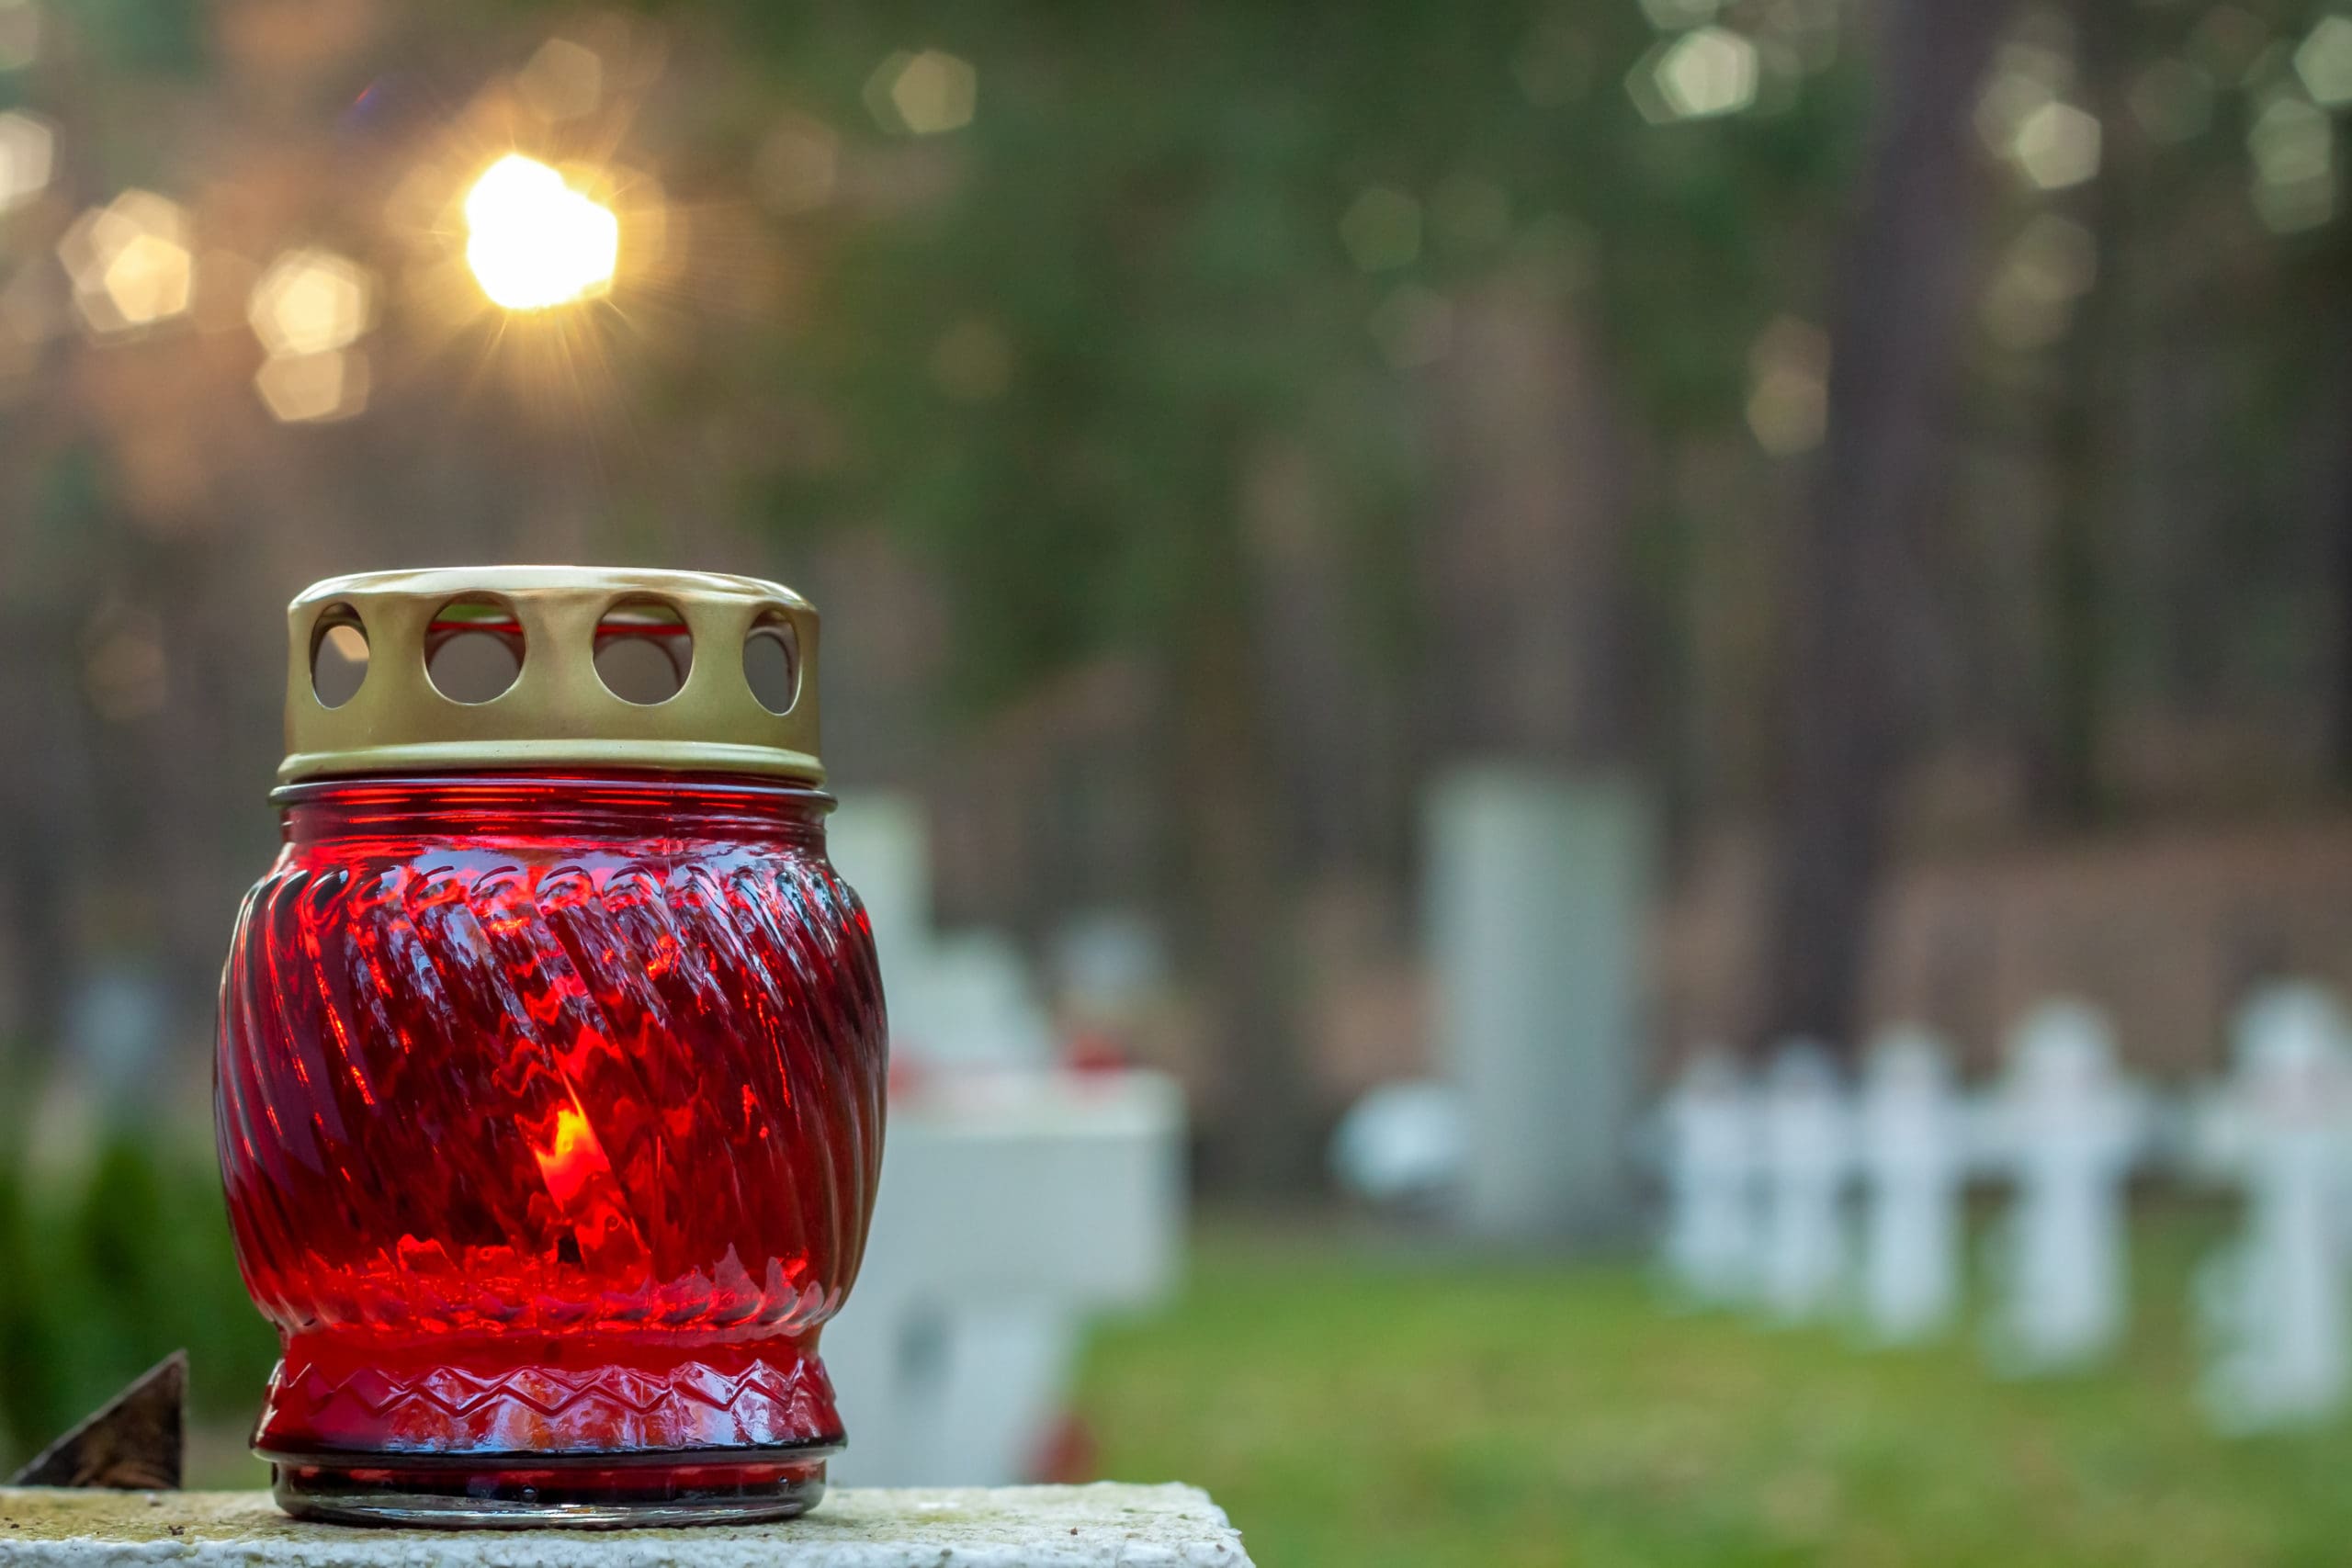 Égő piros temetői üvegmécses.